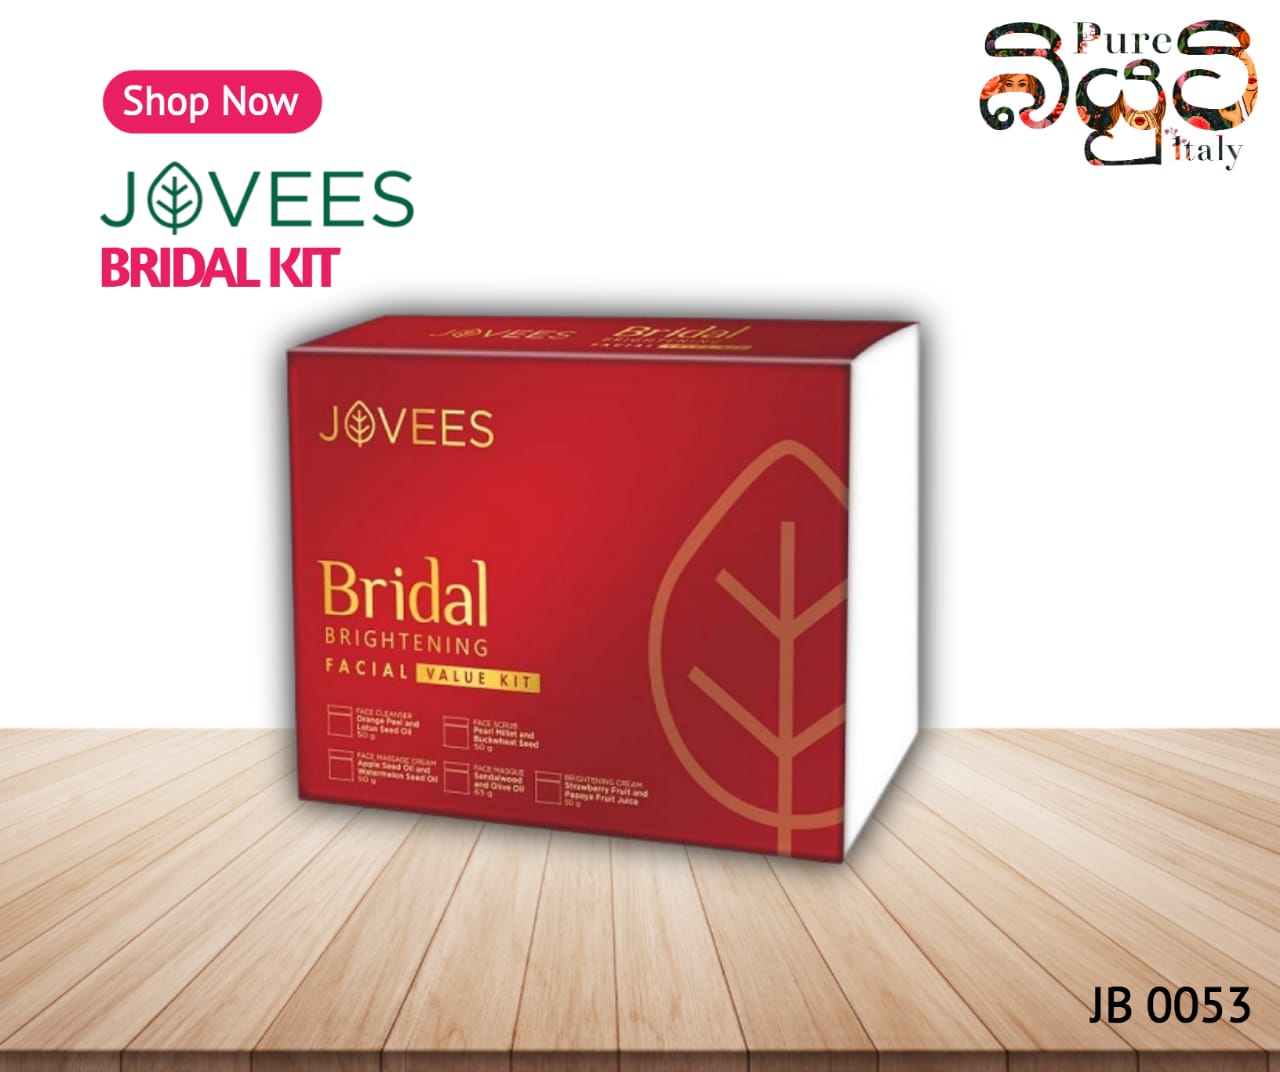 JOVEES Herbal Bridal Brightening Facial Value Kit